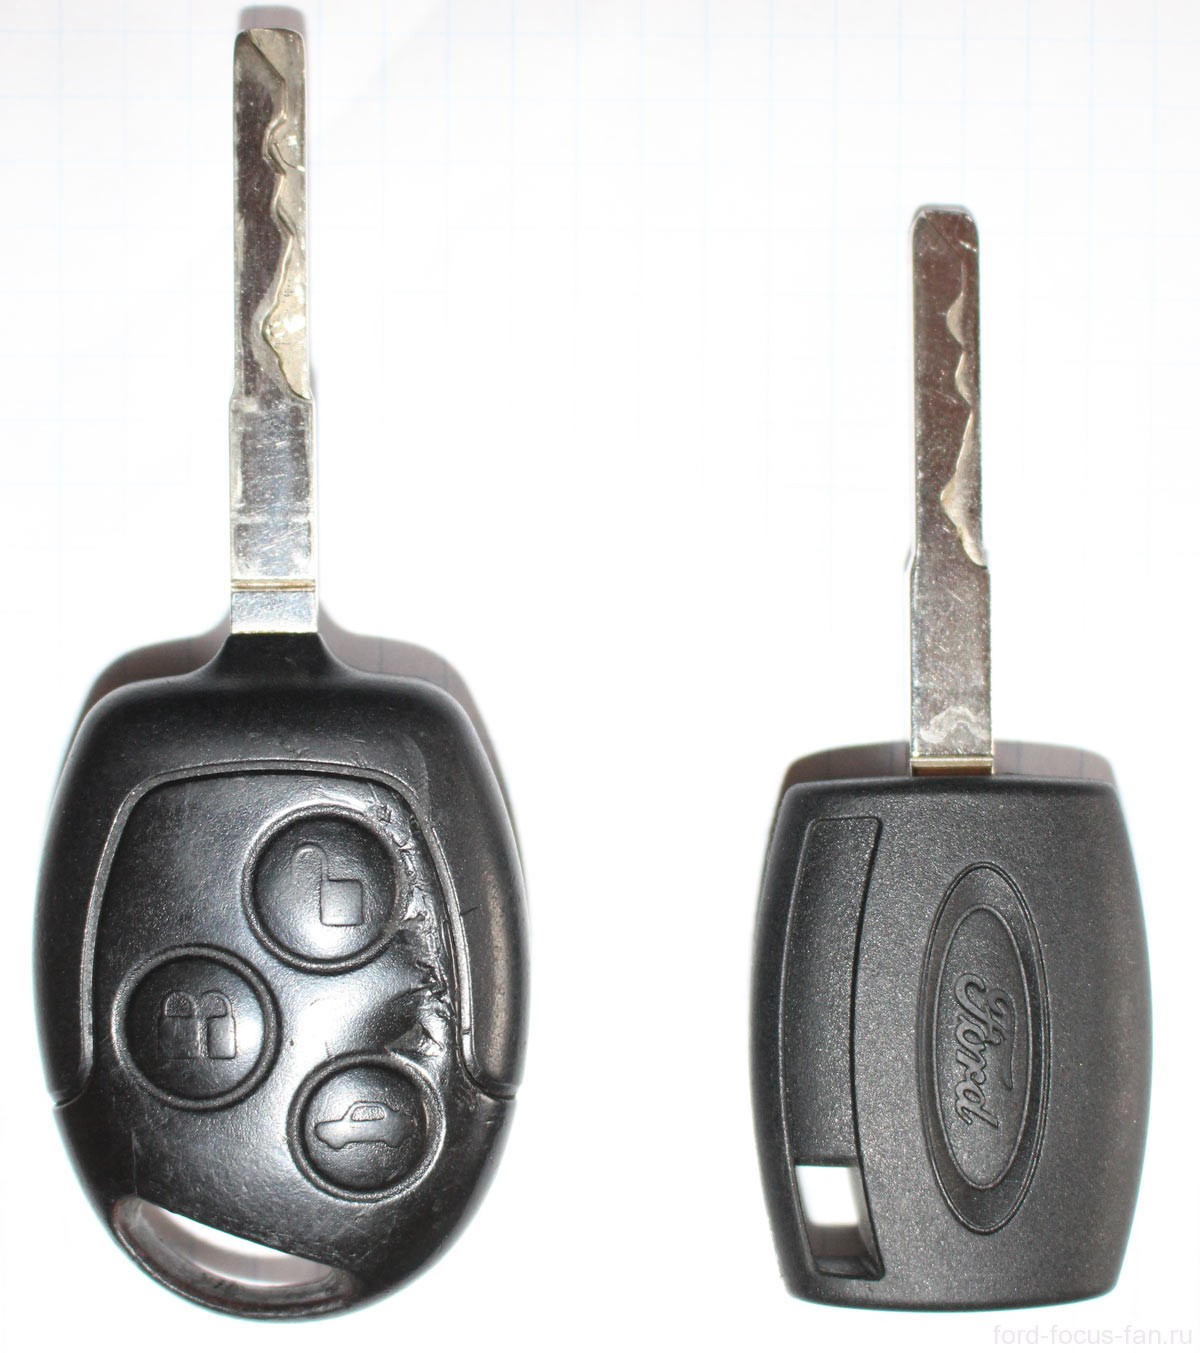 Ford Fusion > Ключ только закрывает - не открывает!